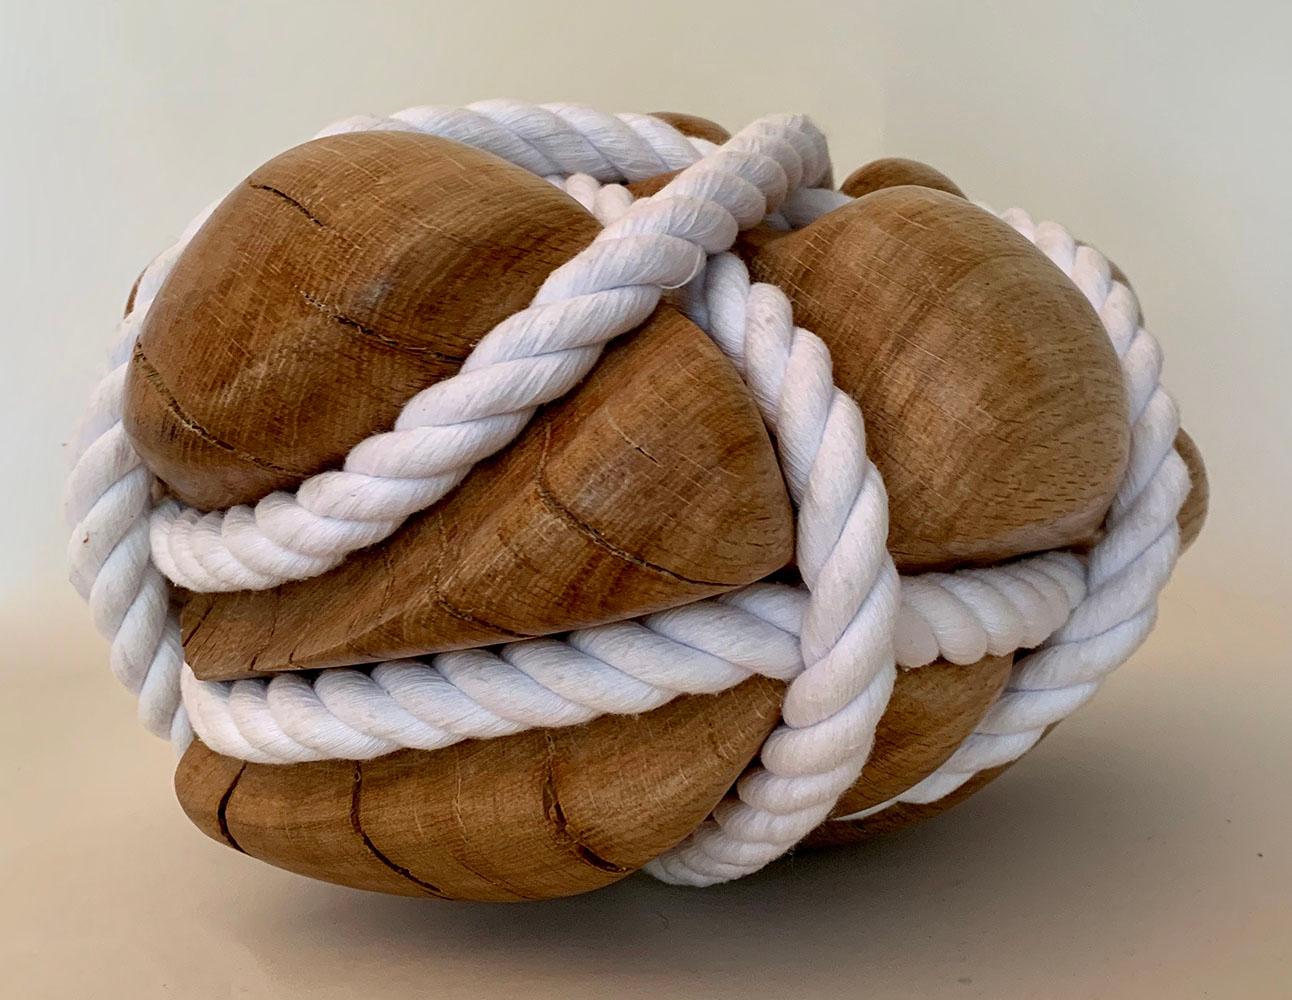 Bound Heart est une sculpture unique en bois de chêne et corde de coton de l'artiste contemporain Peter Brooke-Ball. Ses dimensions sont de 19 × 34 × 26 cm (7,5 × 13,4 × 10,2 in).  
La sculpture est accompagnée d'un certificat d'authenticité.

Cette